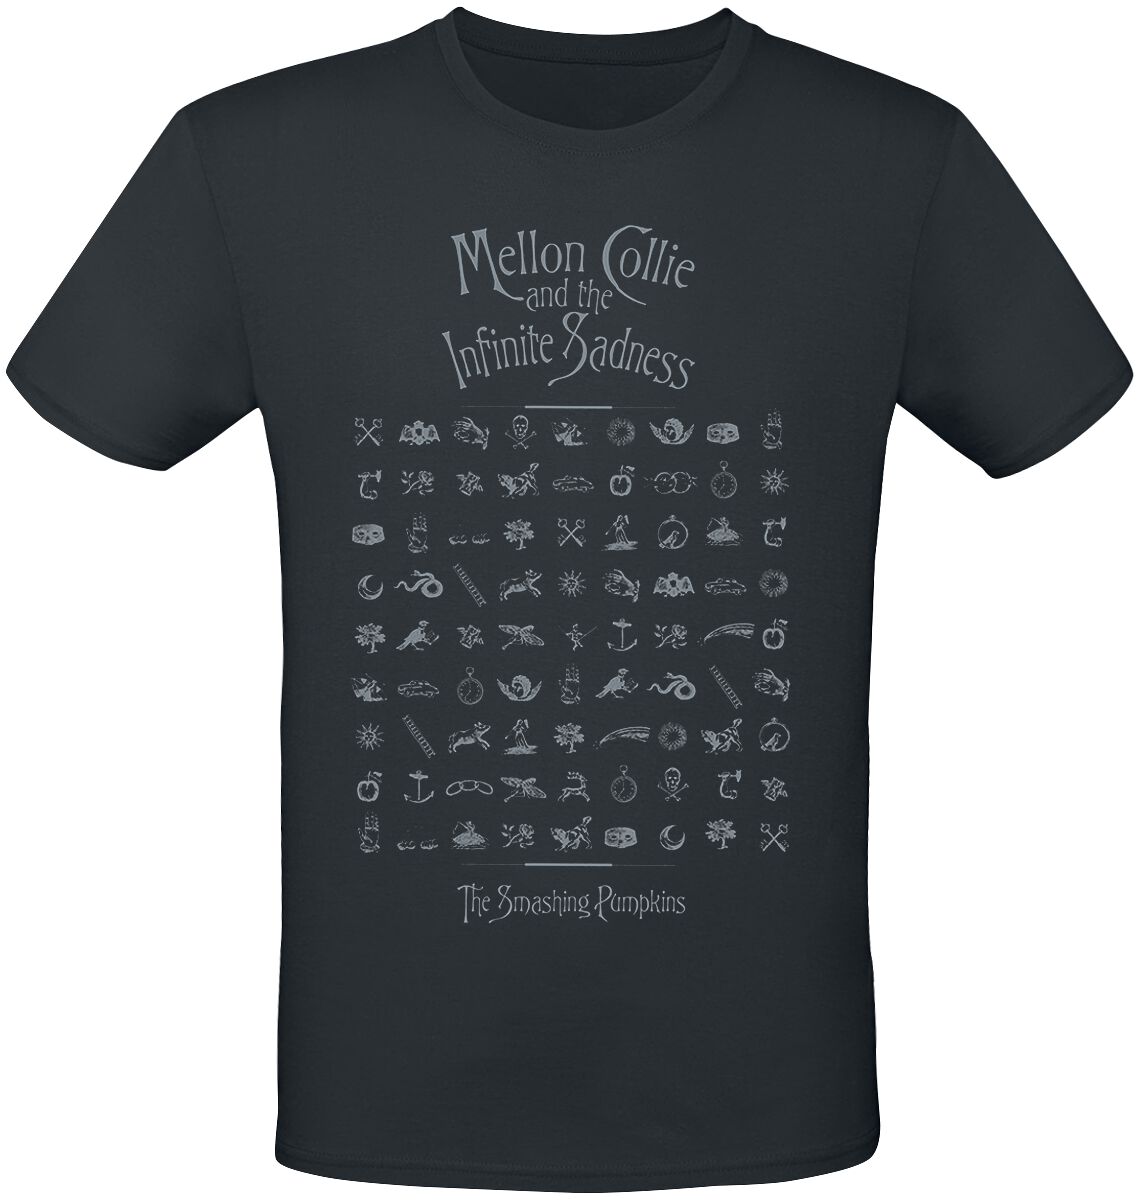 Smashing Pumpkins T-Shirt - MCATIS Symbols - S bis 3XL - für Männer - Größe XXL - schwarz  - Lizenziertes Merchandise!